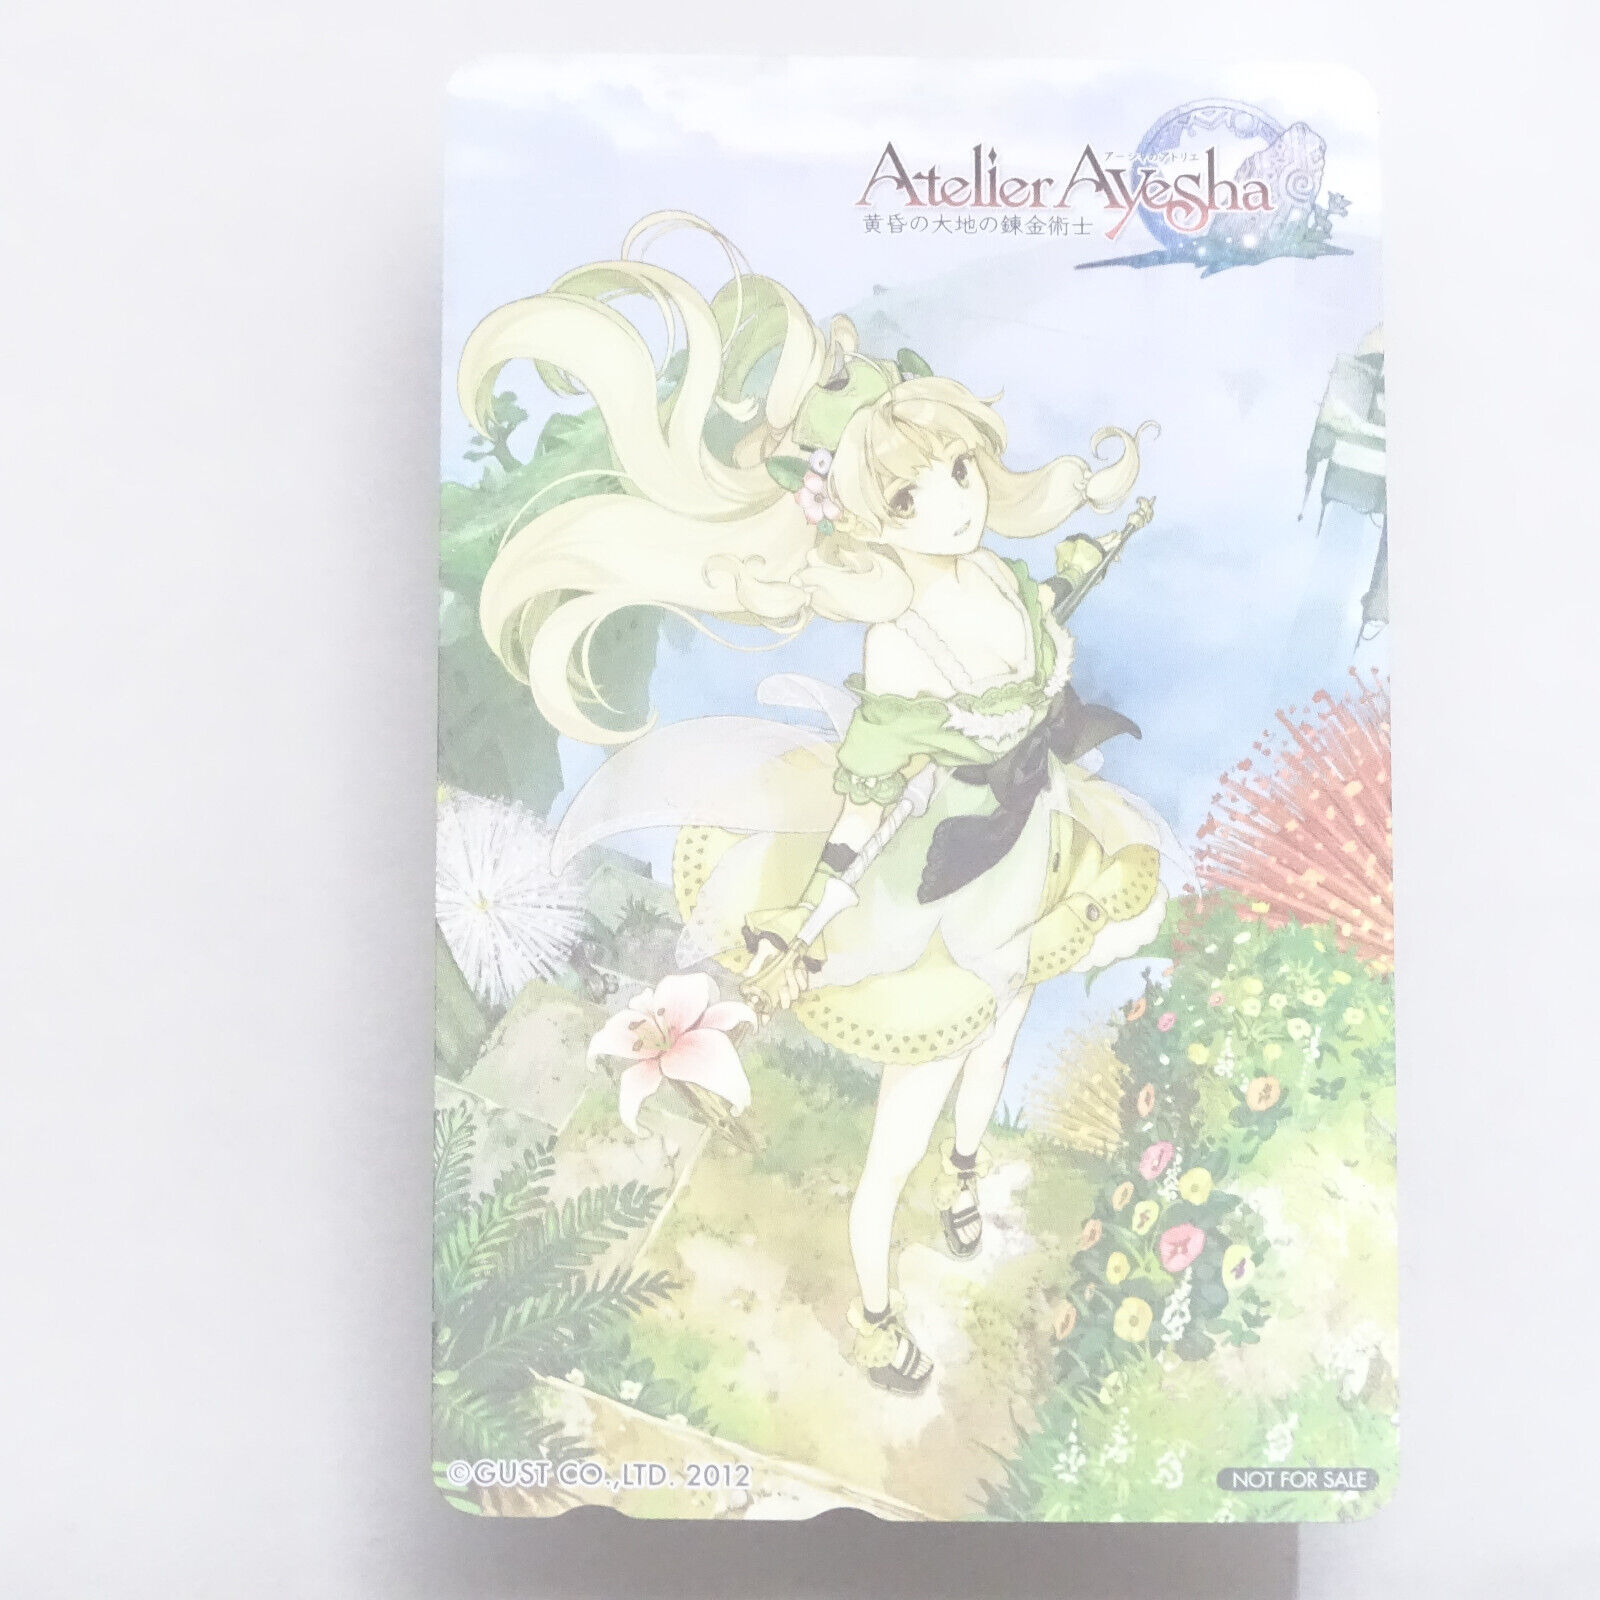 Japanese Telephone Card - Atelier Ayesha: The Alchemist of Dusk - GUST